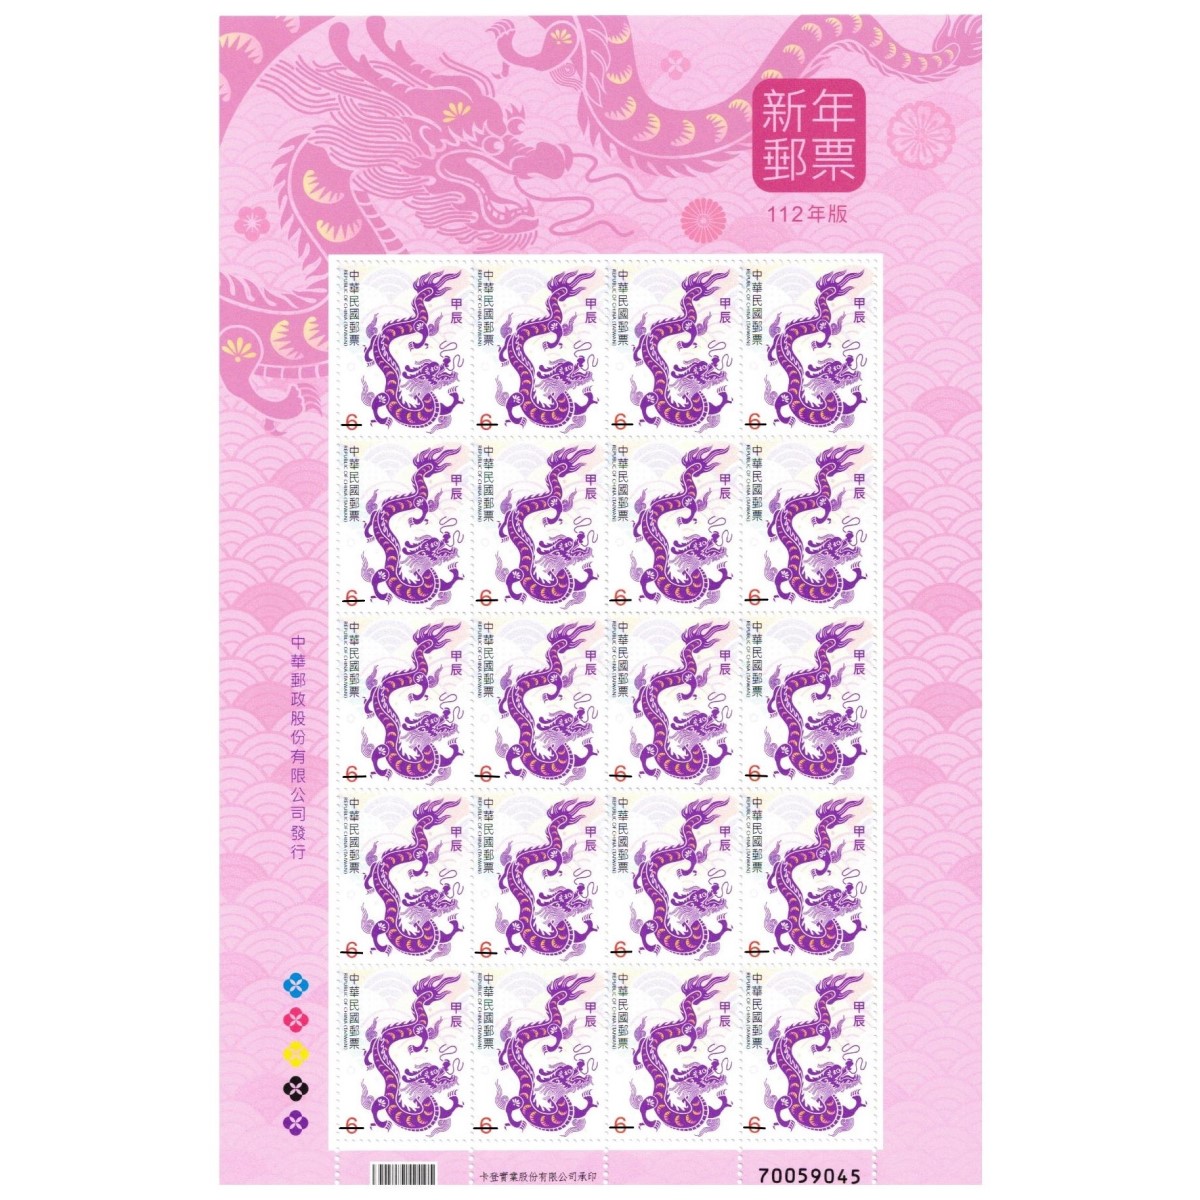 新年郵票(112年版)紫色祥龍6元(全張)